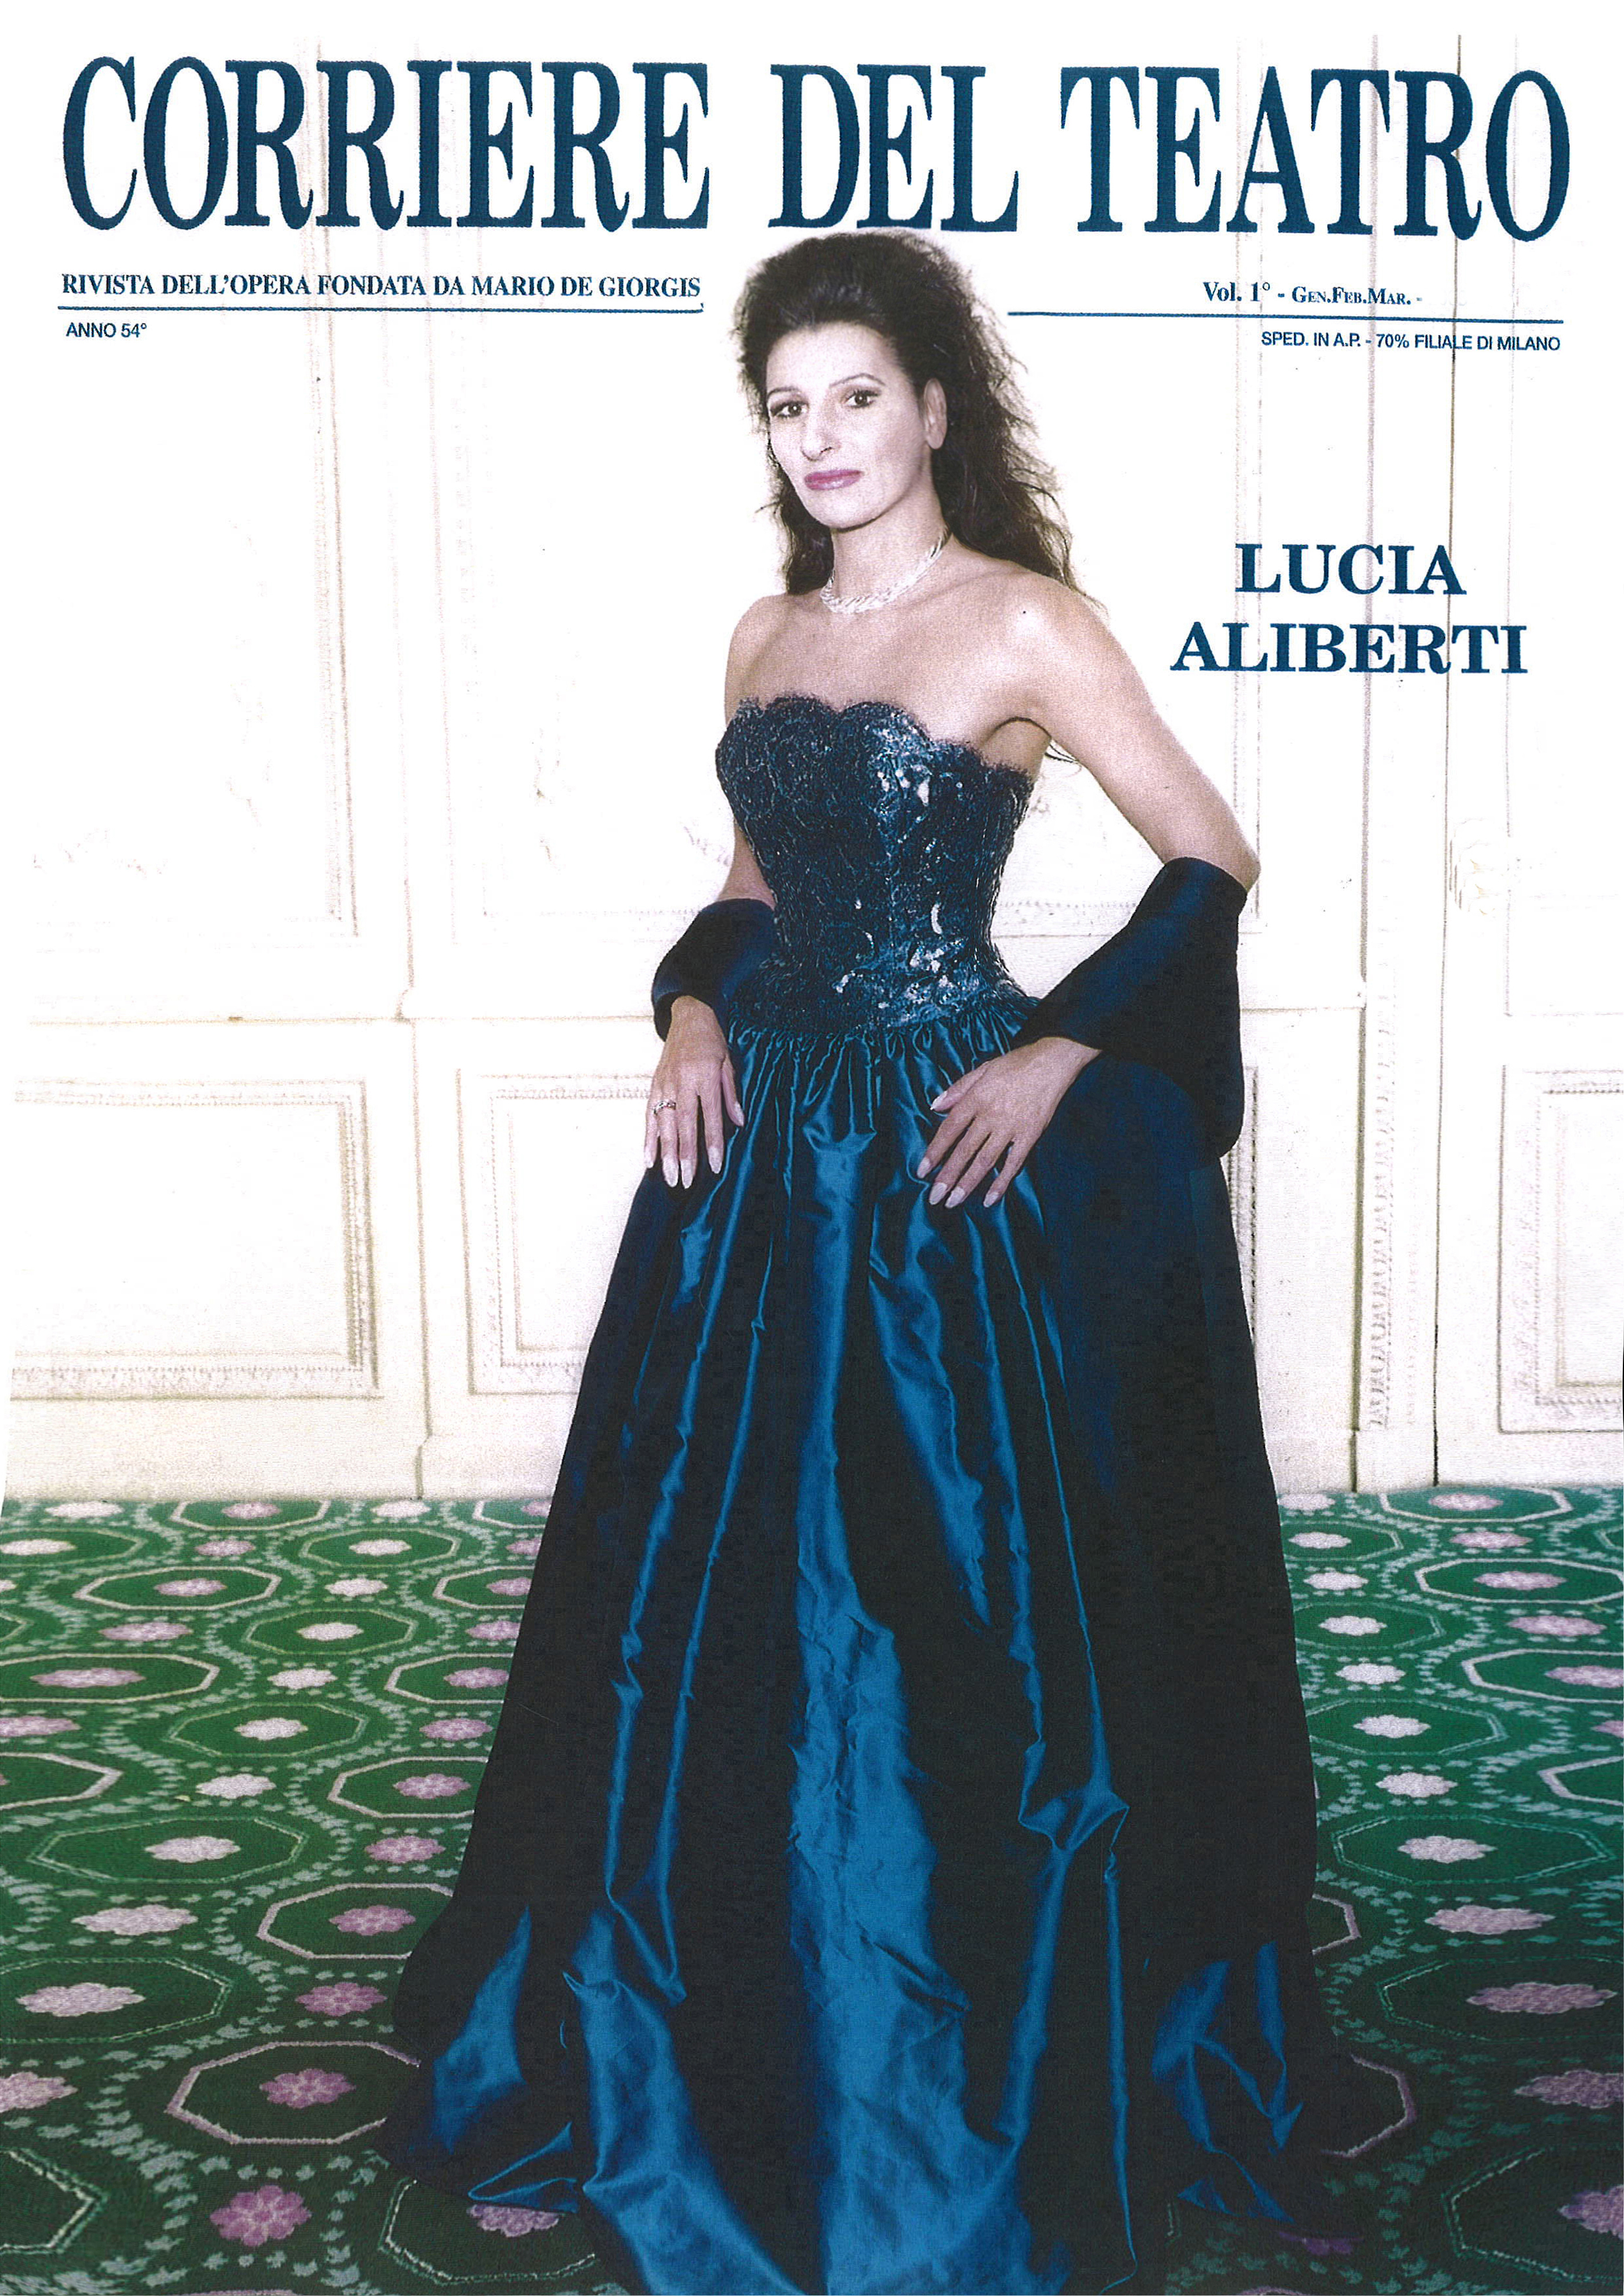 Lucia Aliberti⚘"Corriere Del Teatro"⚘Magazine⚘Interview⚘Cover Series⚘:http://www.luciaaliberti.it #luciaaliberti #corrieredelteatro #magazine #interview #coverseries